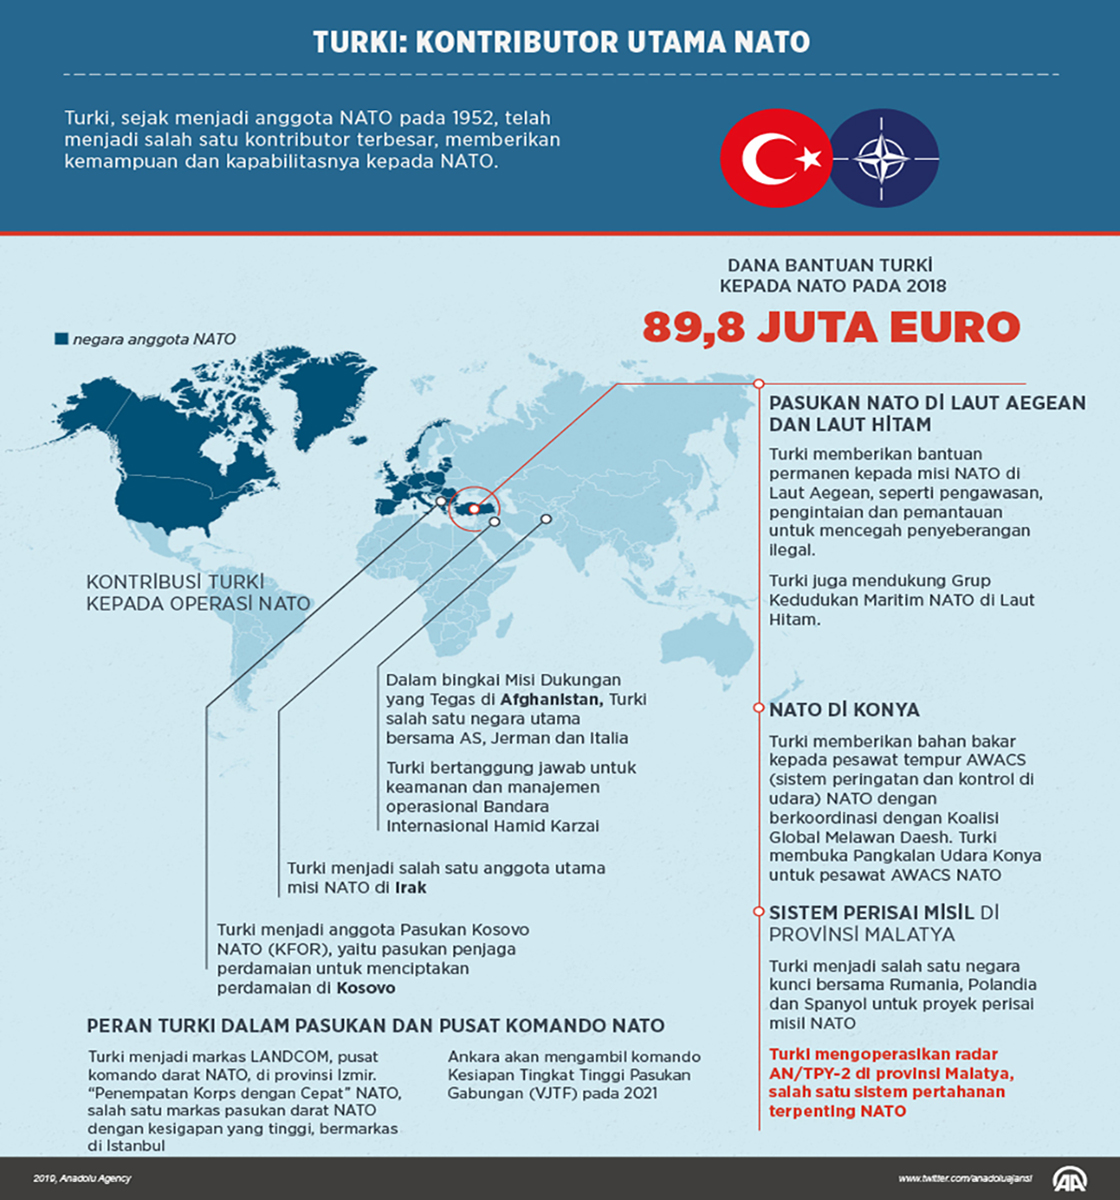 Turki: Kontributor utama NATO